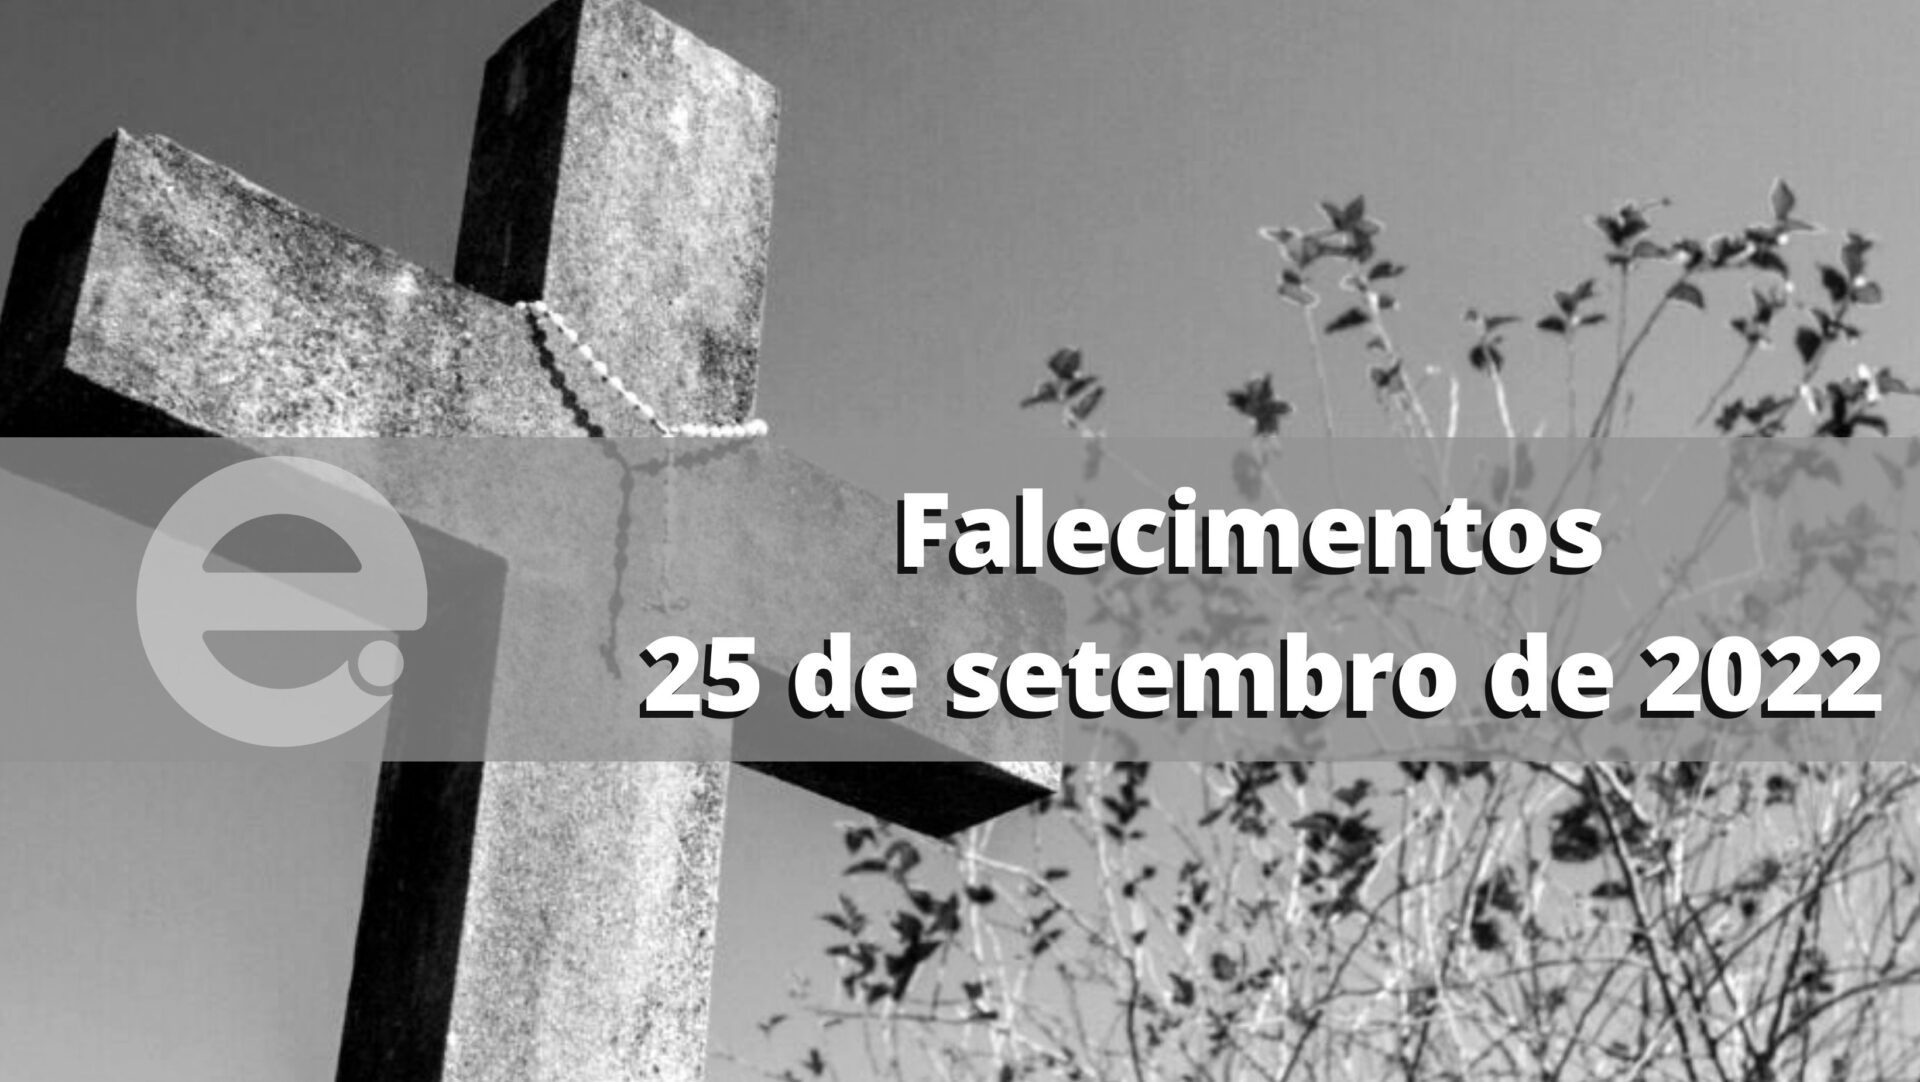 Confira os falecimentos deste domingo, 25 de setembro de 2022, em Limeira